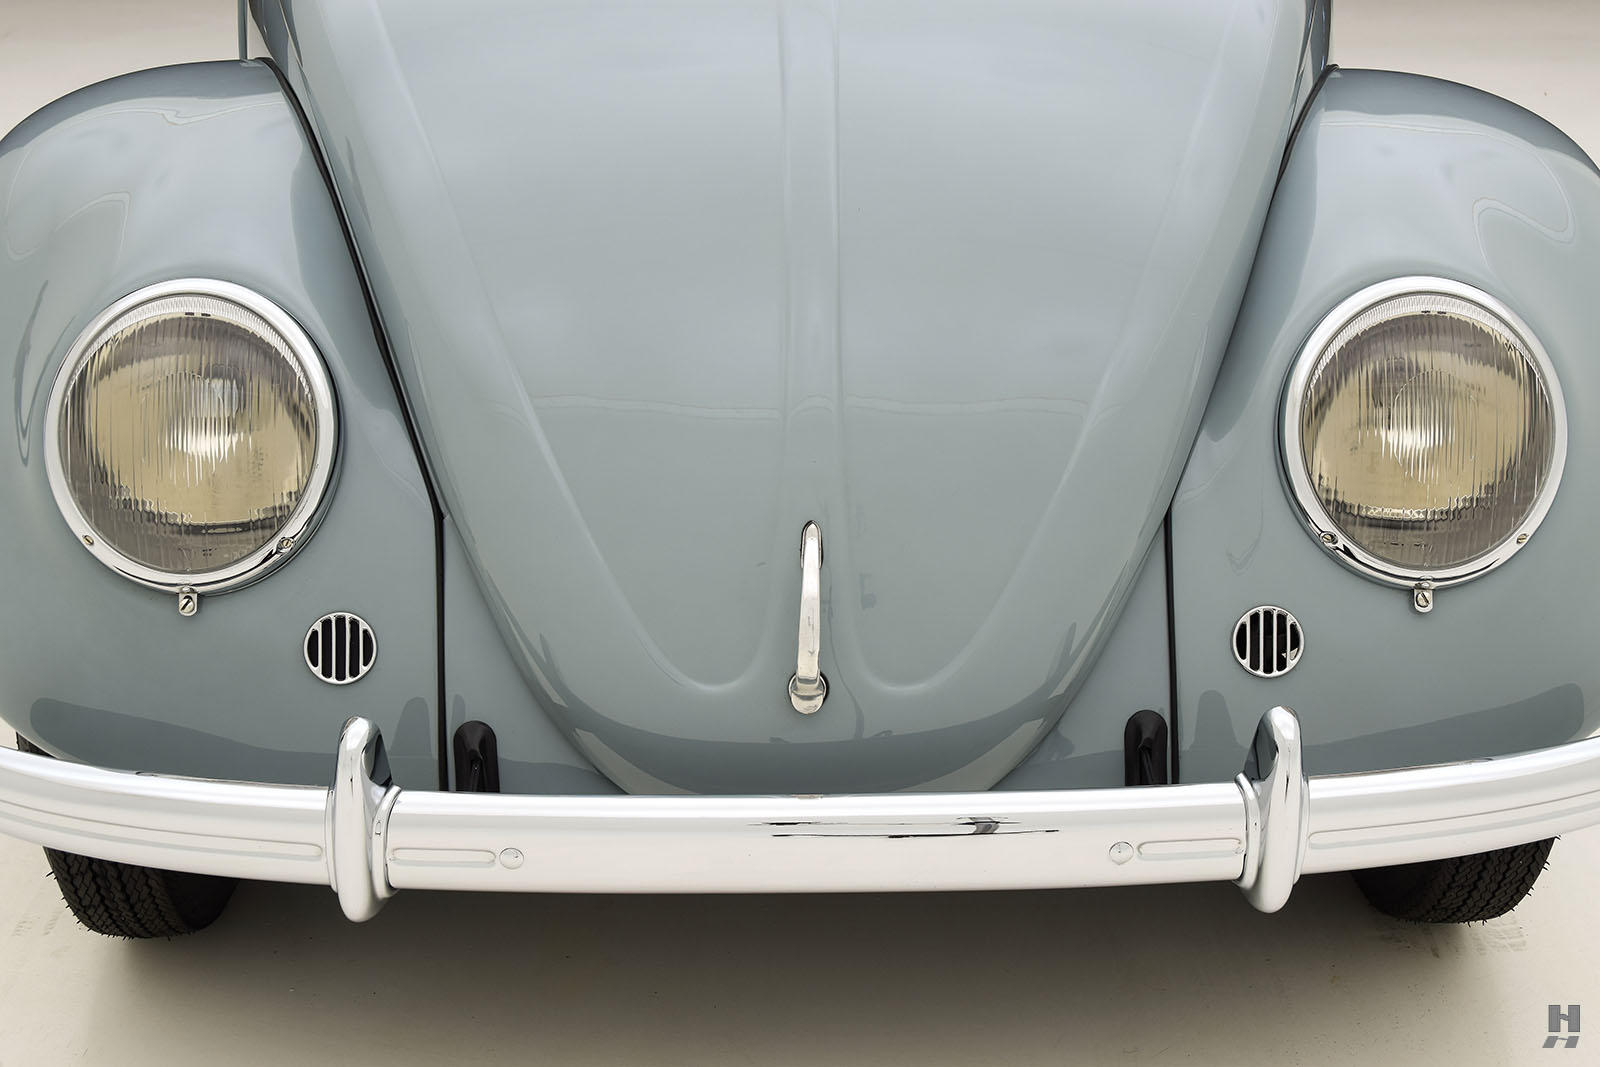 1962 volkswagen beetle